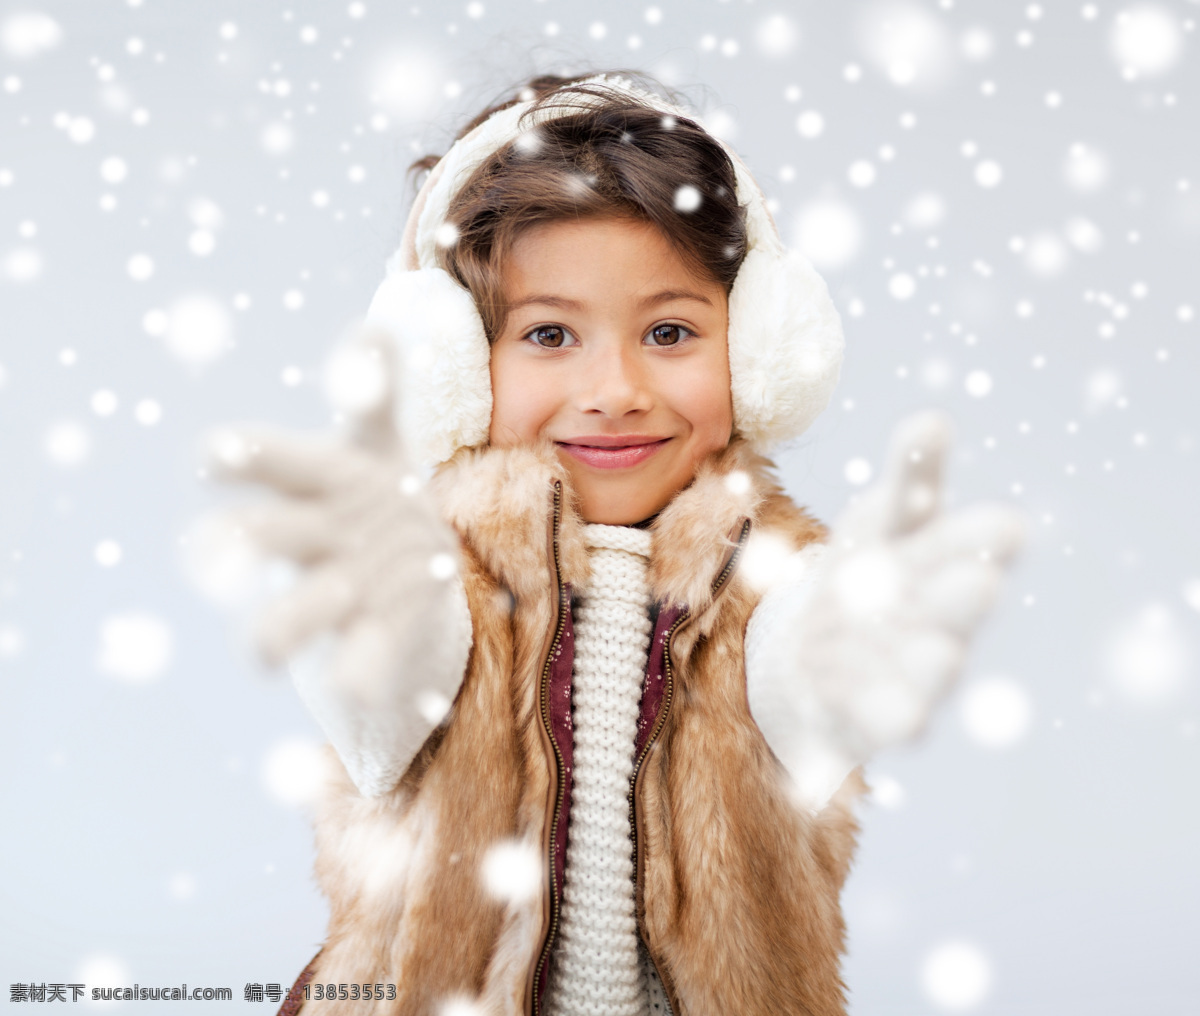 戴 手套 女孩 耳罩 保暖耳罩 小女孩 儿童 冬天 冬季 下雪 自然风景 自然景观 白色